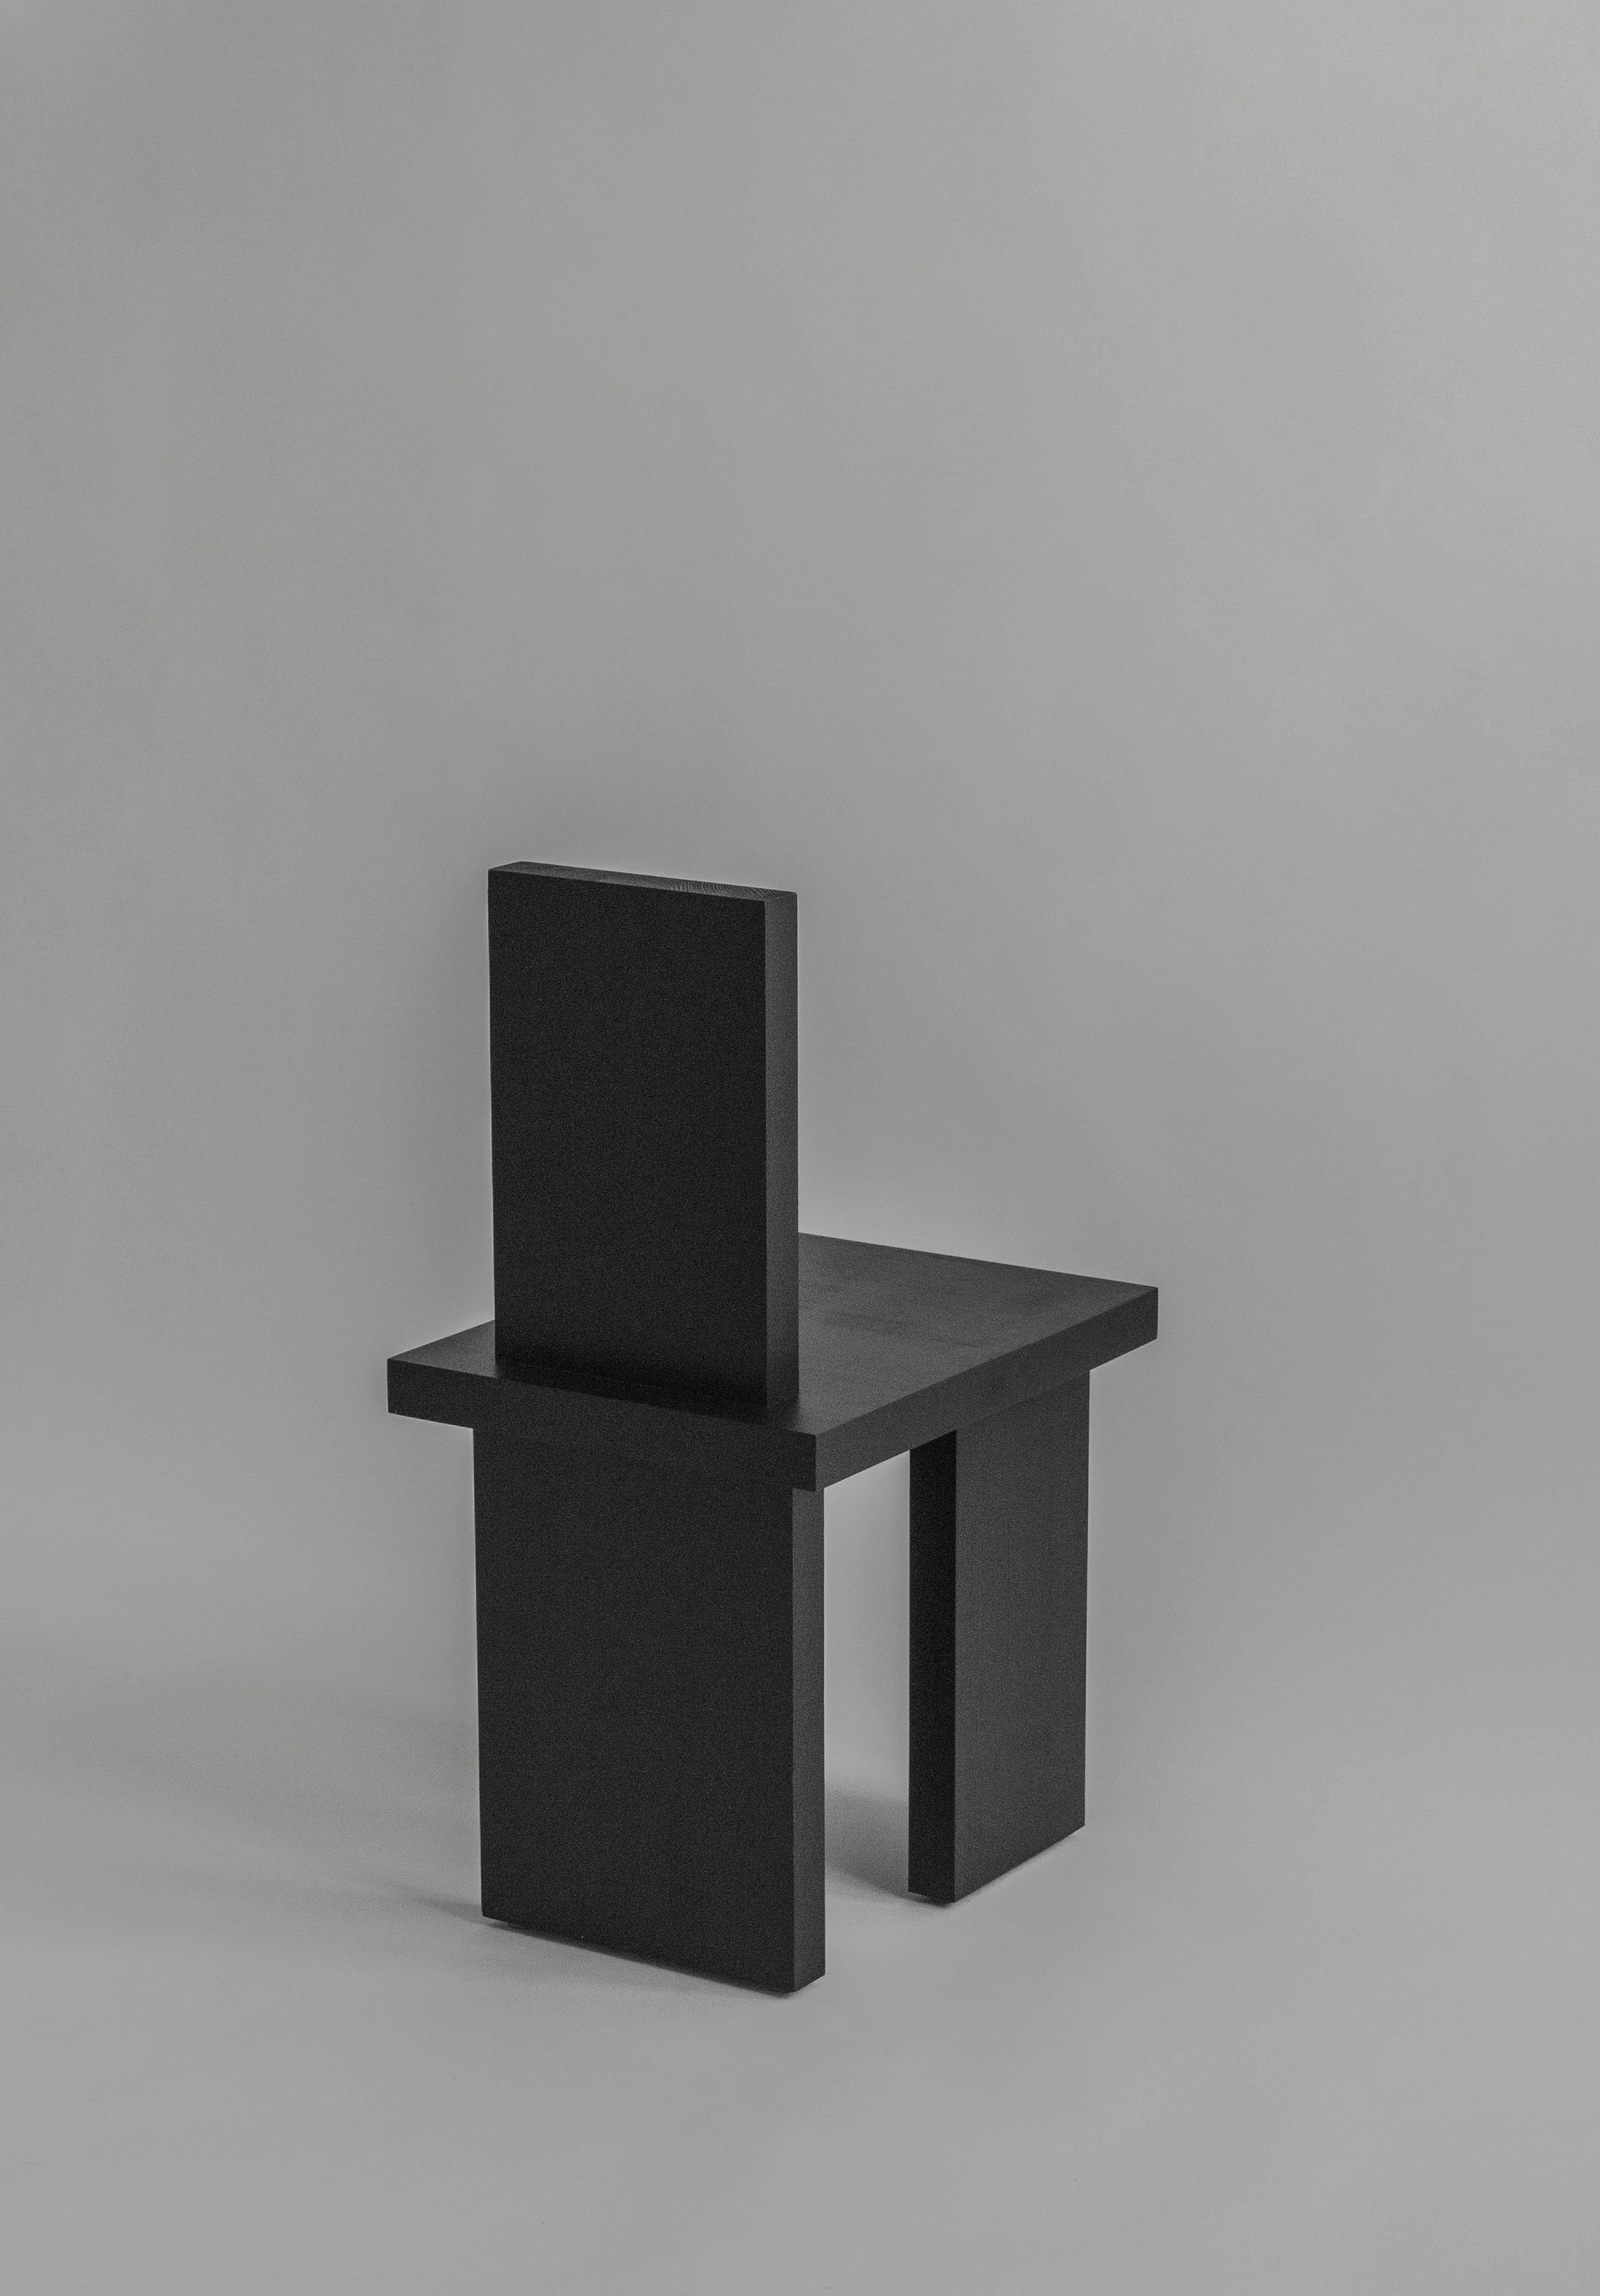 Chaise de salle à manger ItooRaba de Sizar Alexis
Signé
Dimensions : Longueur 36 x largeur 47 x hauteur 77cm
Hauteur du siège 42cm

Disponible en noir teinté, blanc et pin naturel.

Une série de meubles qui adopte des formes géométriques.